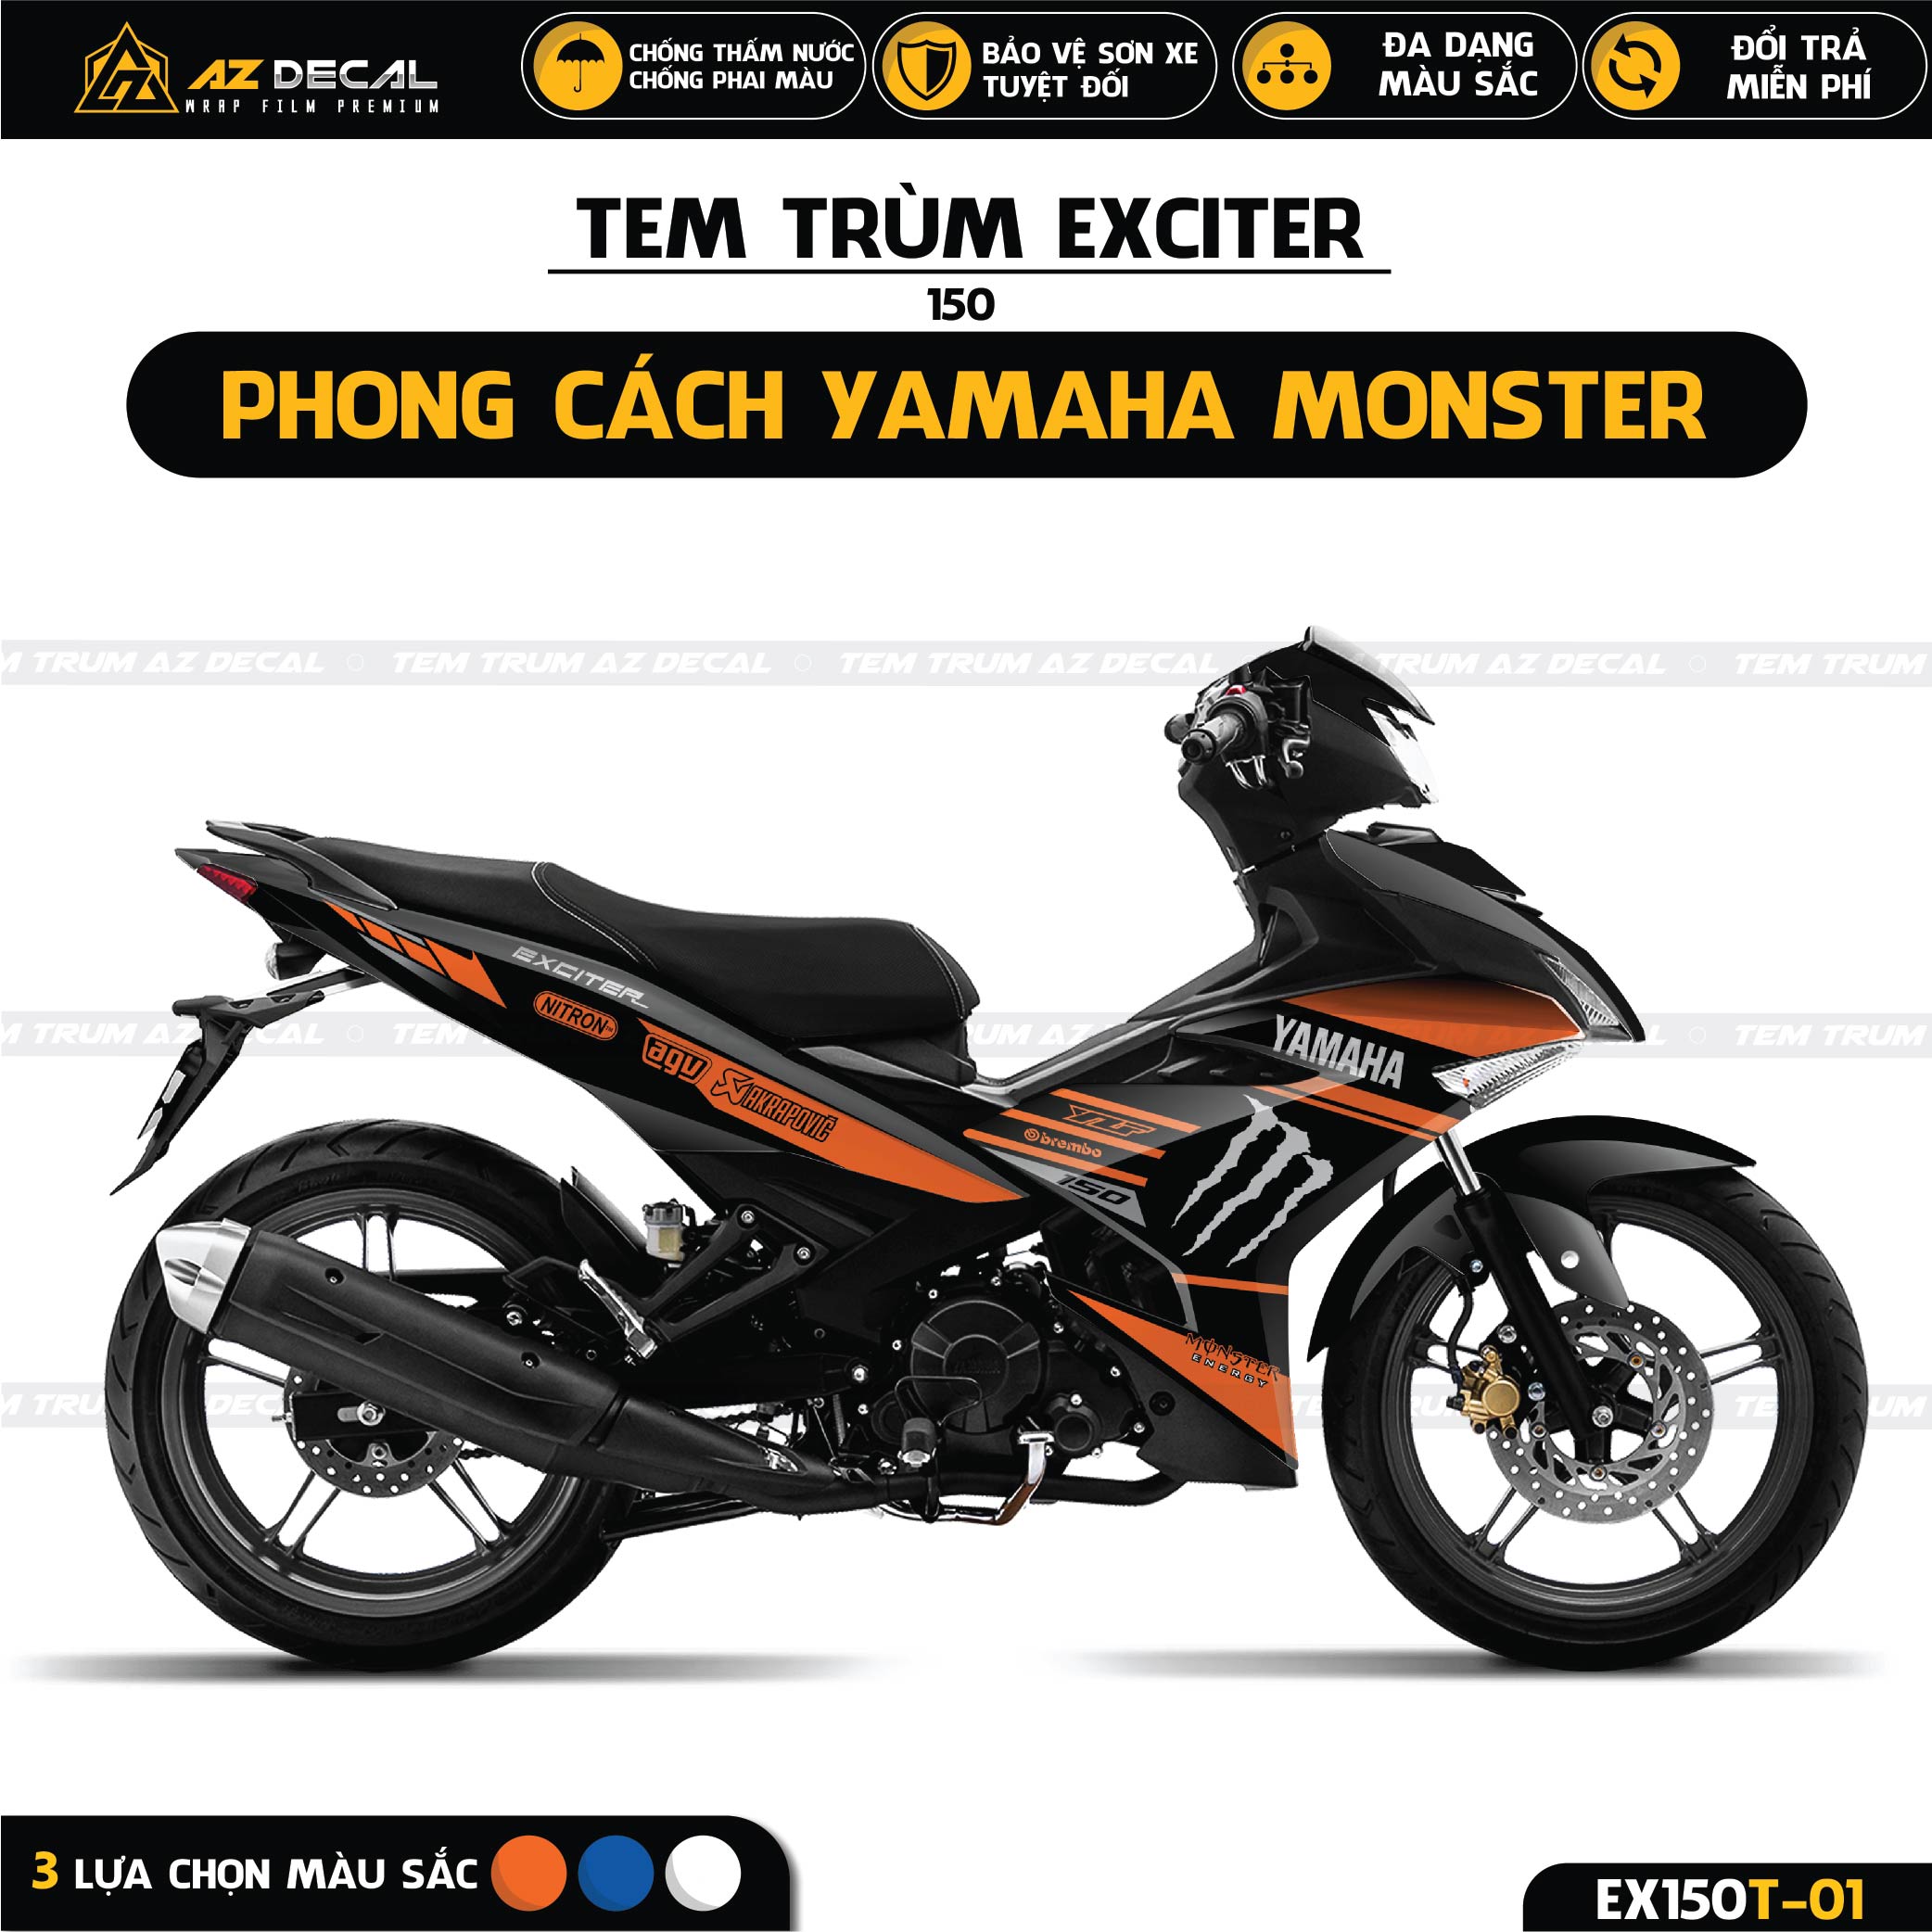 Yamaha Exciter 150 2019 màu cam ánh kim đẹp mê ly giá chỉ 36 triệu